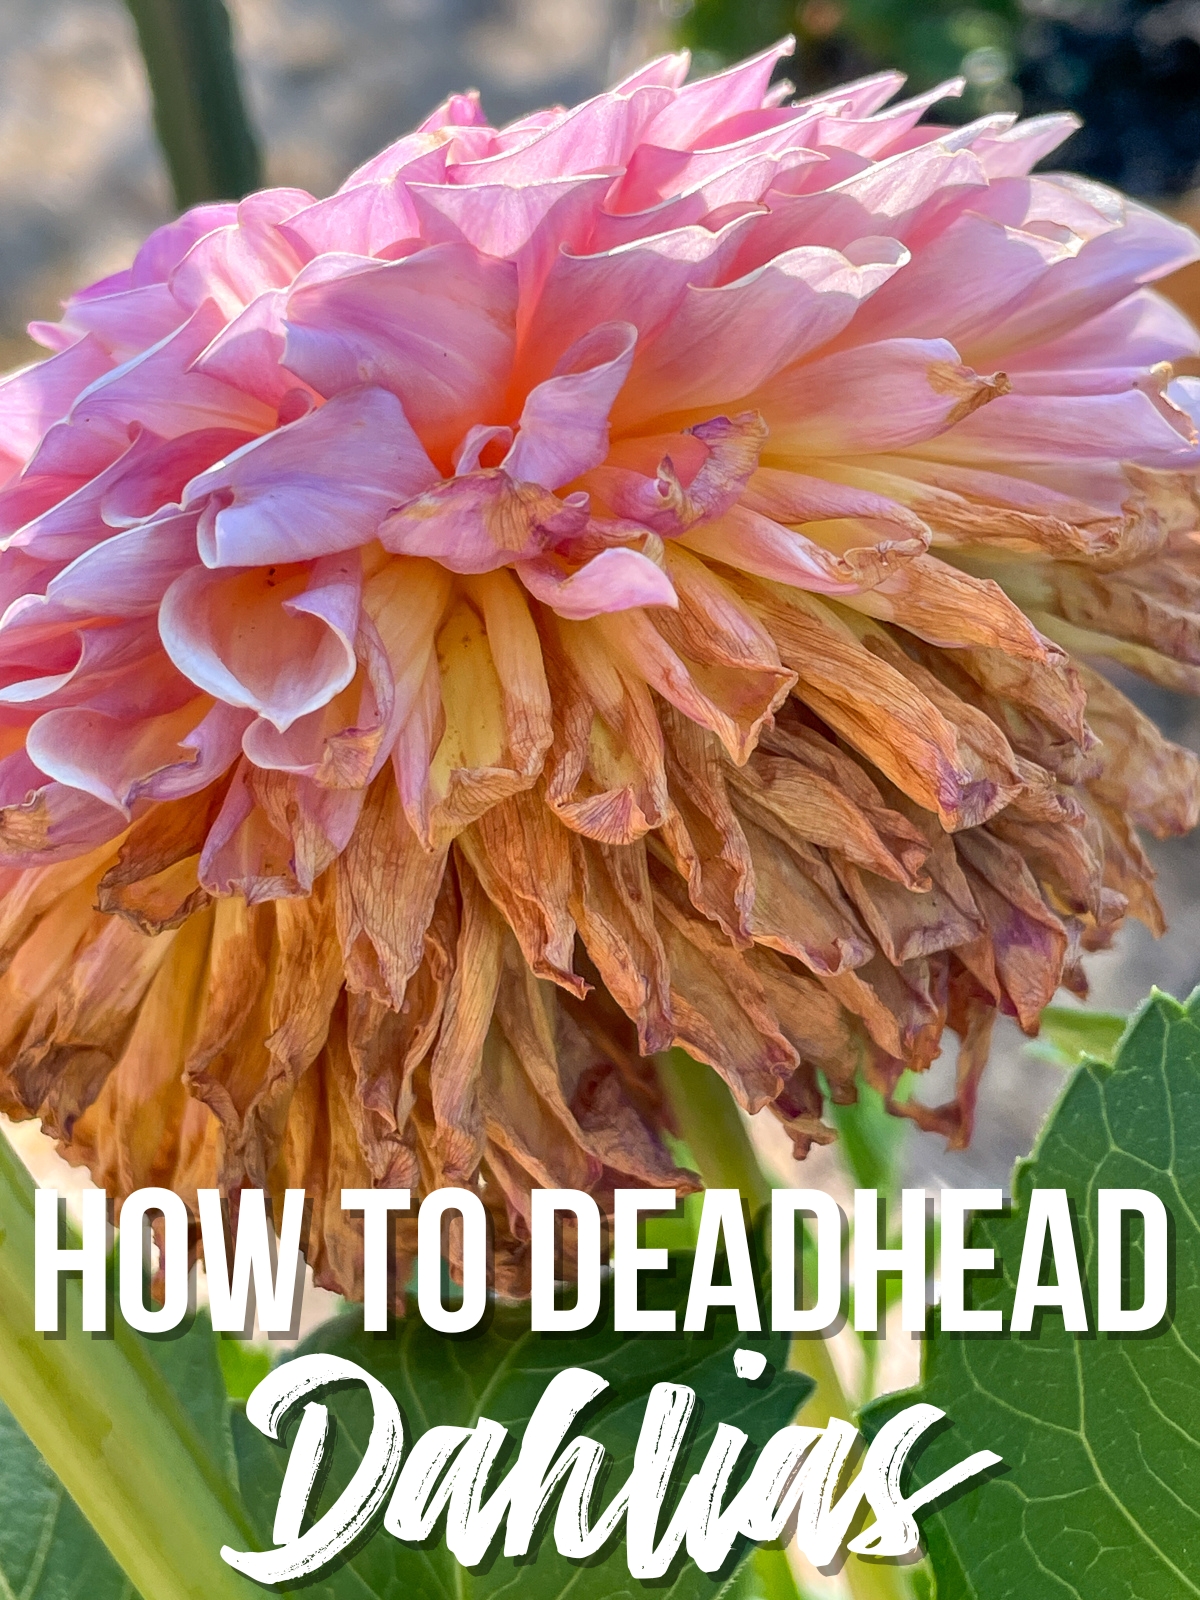 How to deadhead dahlias